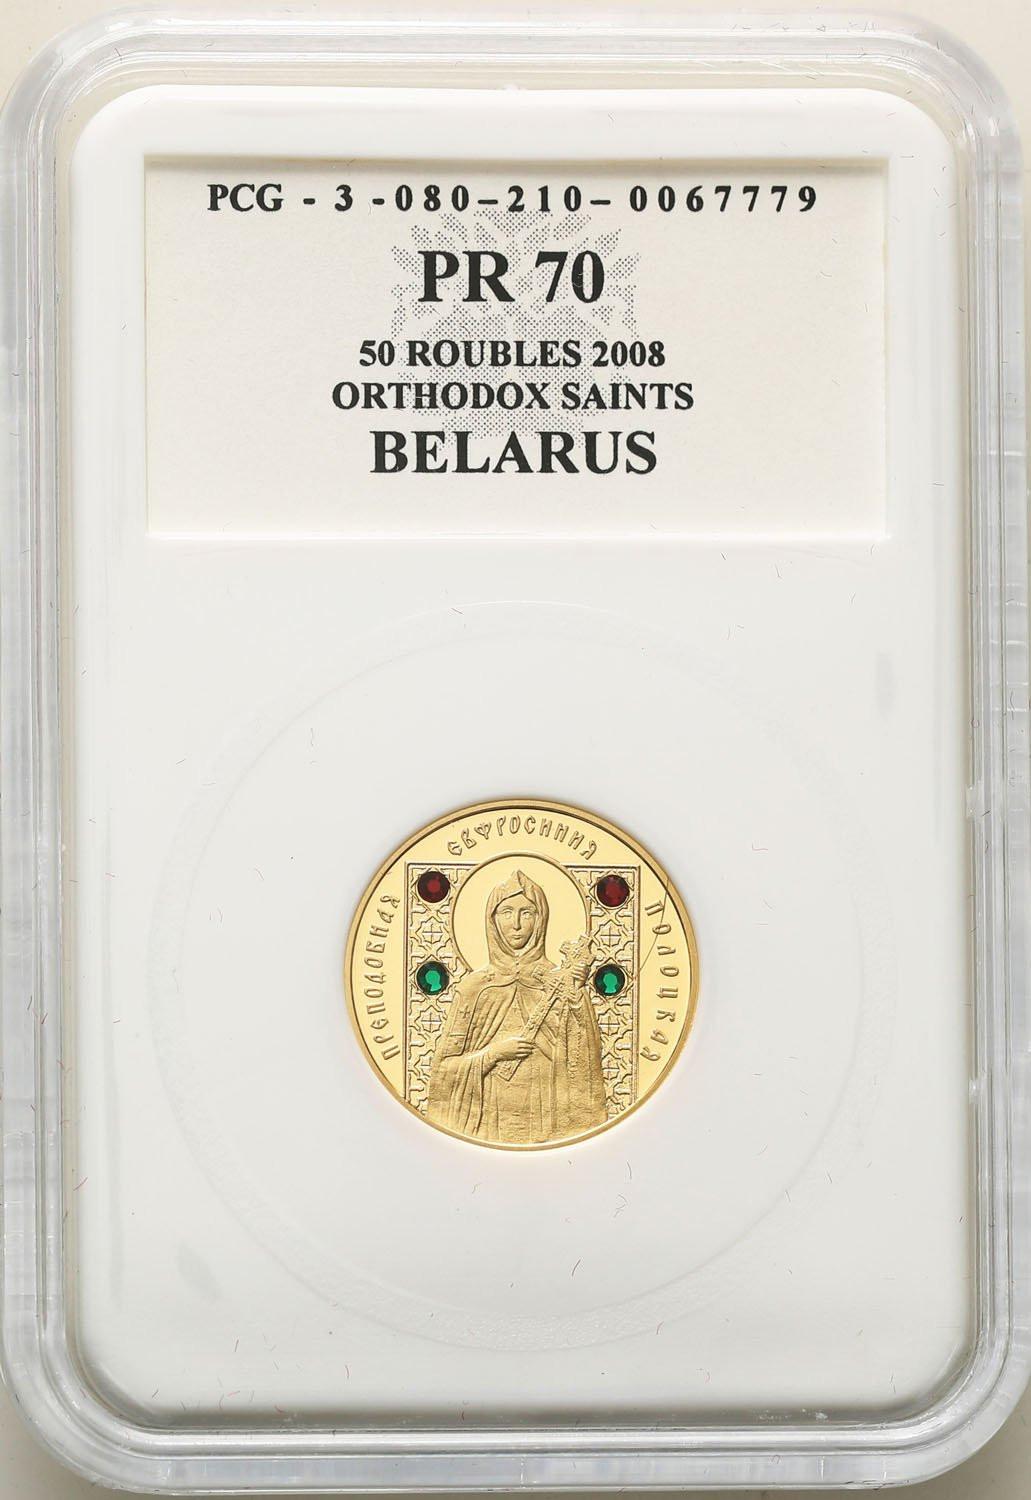 Białoruś 50 rubli 2008 Św. Pantelejmon - Święci Prawosławni PCG PR70